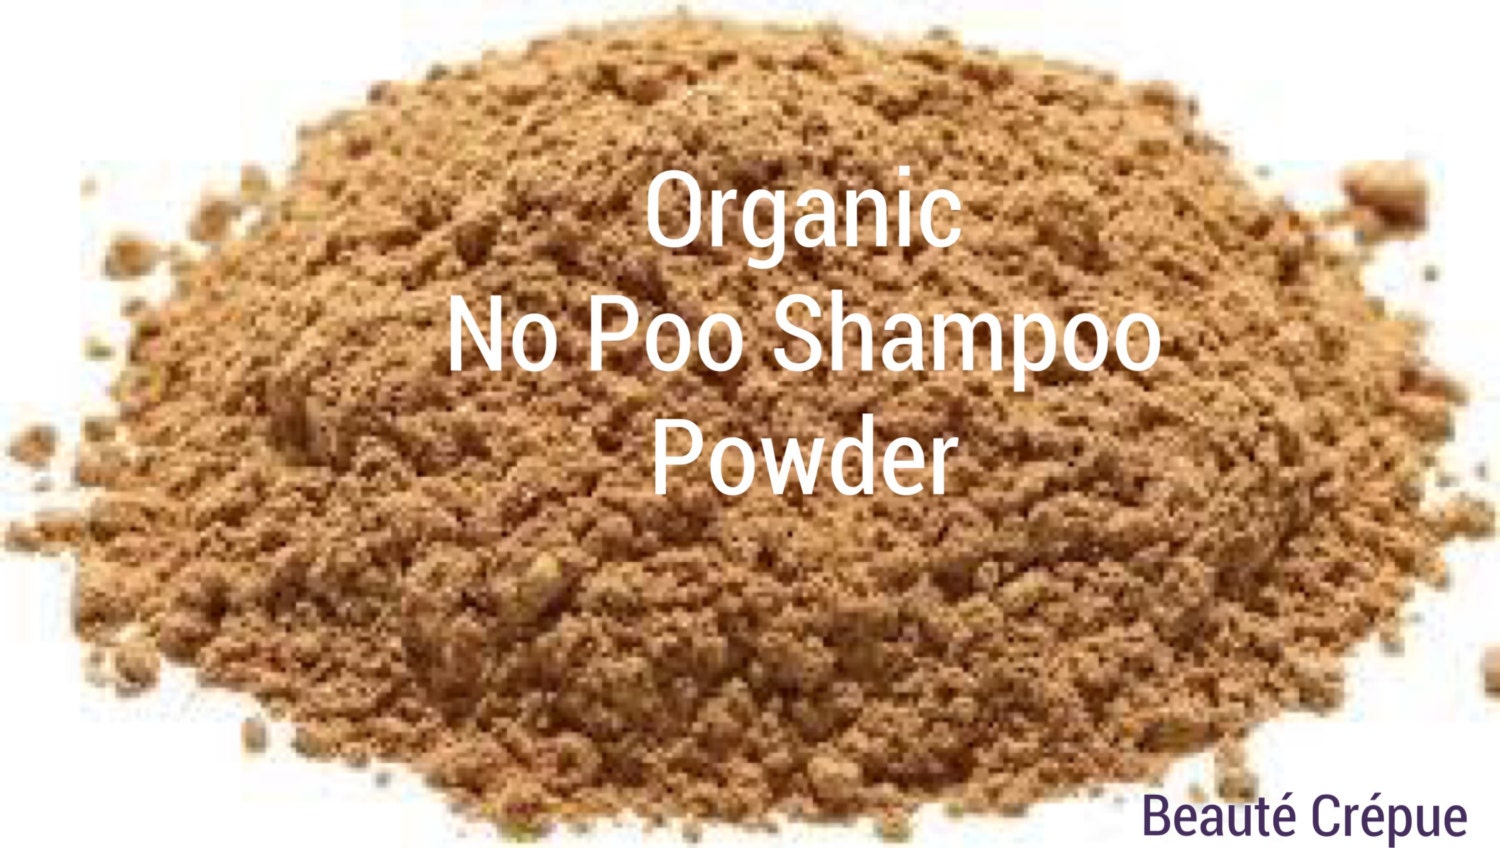 No Poo Shampoo Powder Organic, Vegetal and Natural, with